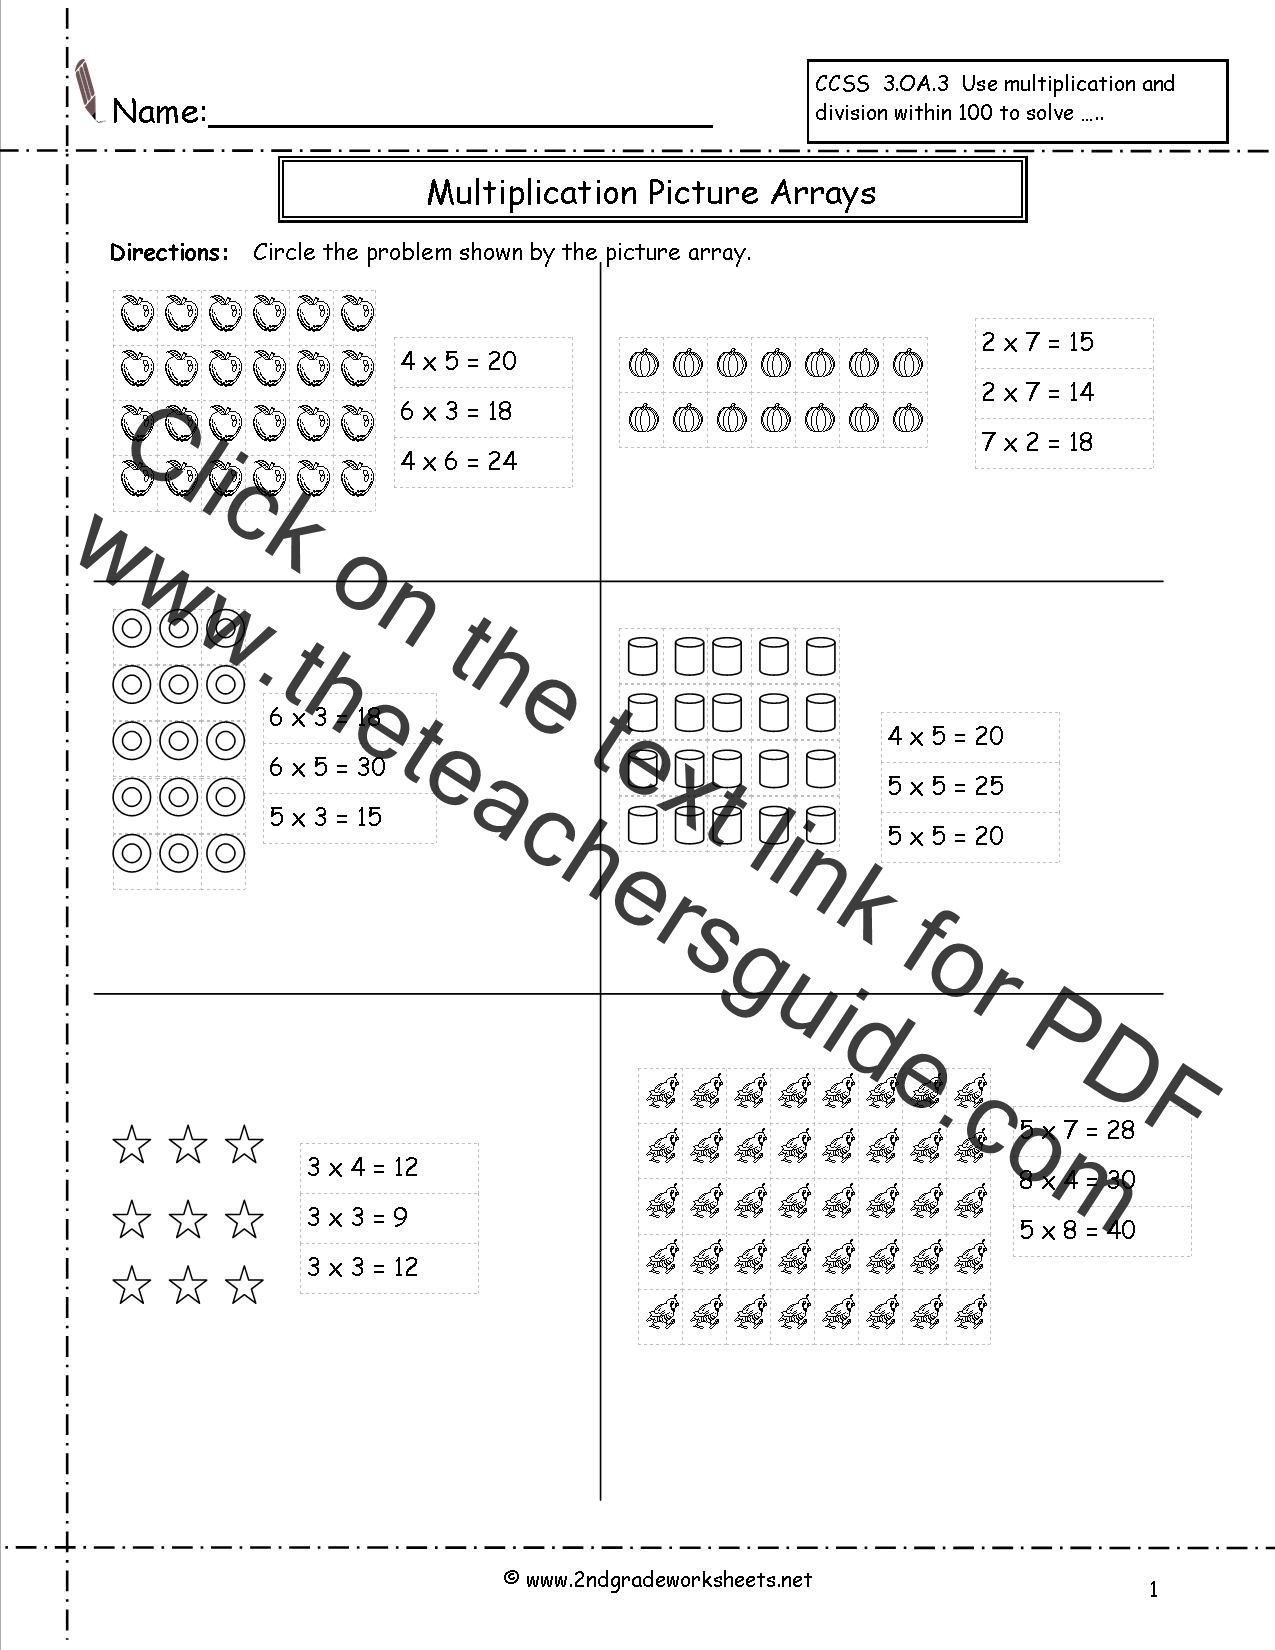 free-multiplication-arrays-worksheets-best-kids-worksheets